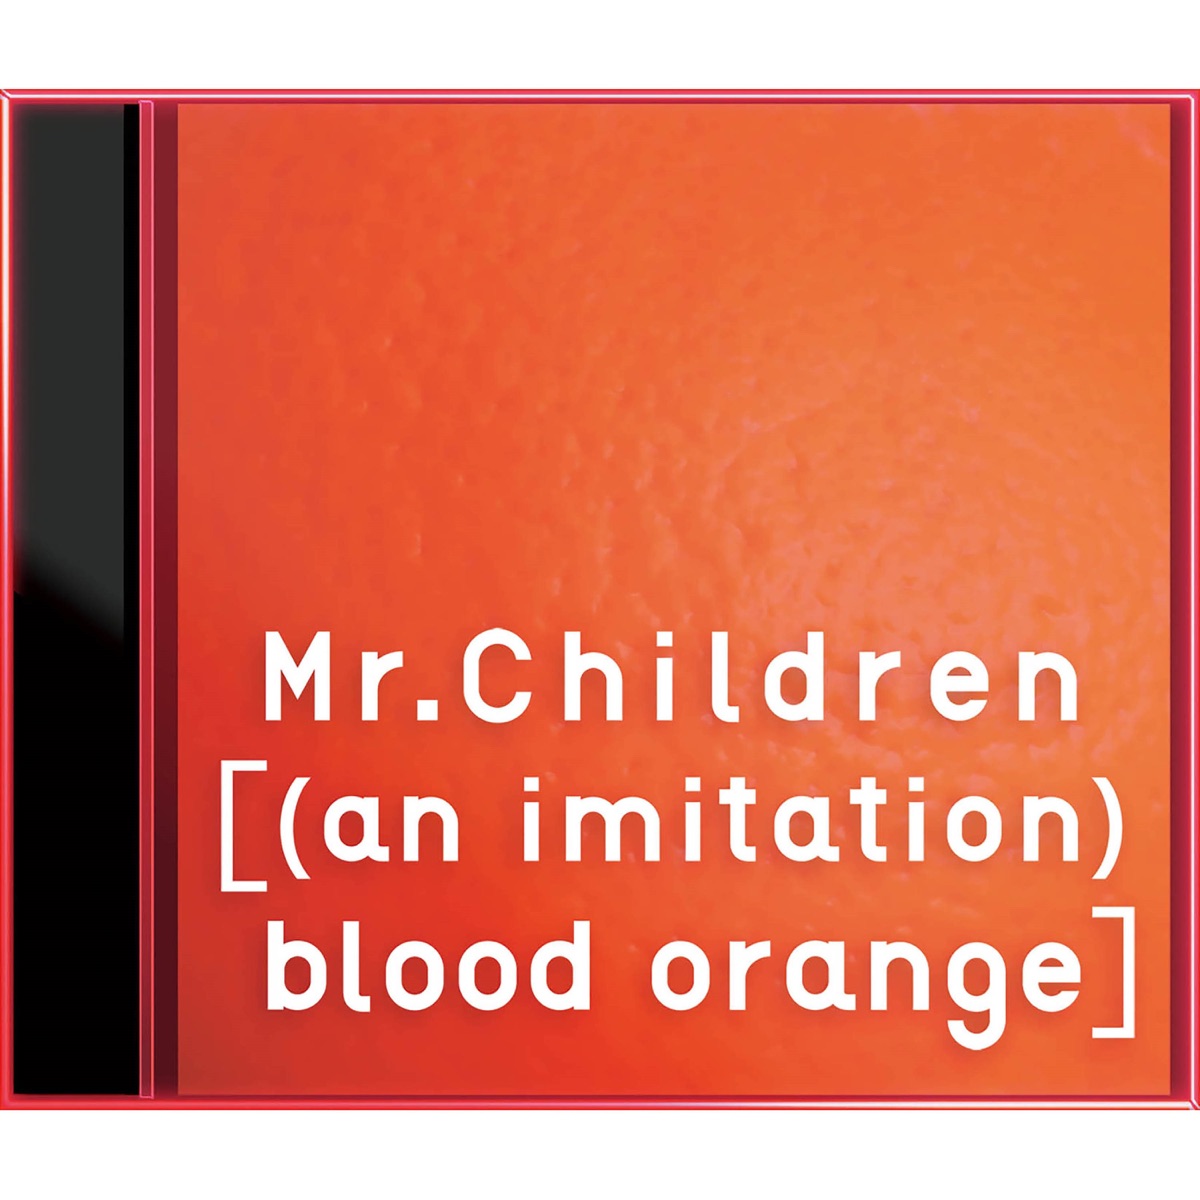 ‎[(An Imitation) Blood Orange] - Album by Mr.Children - Apple Music